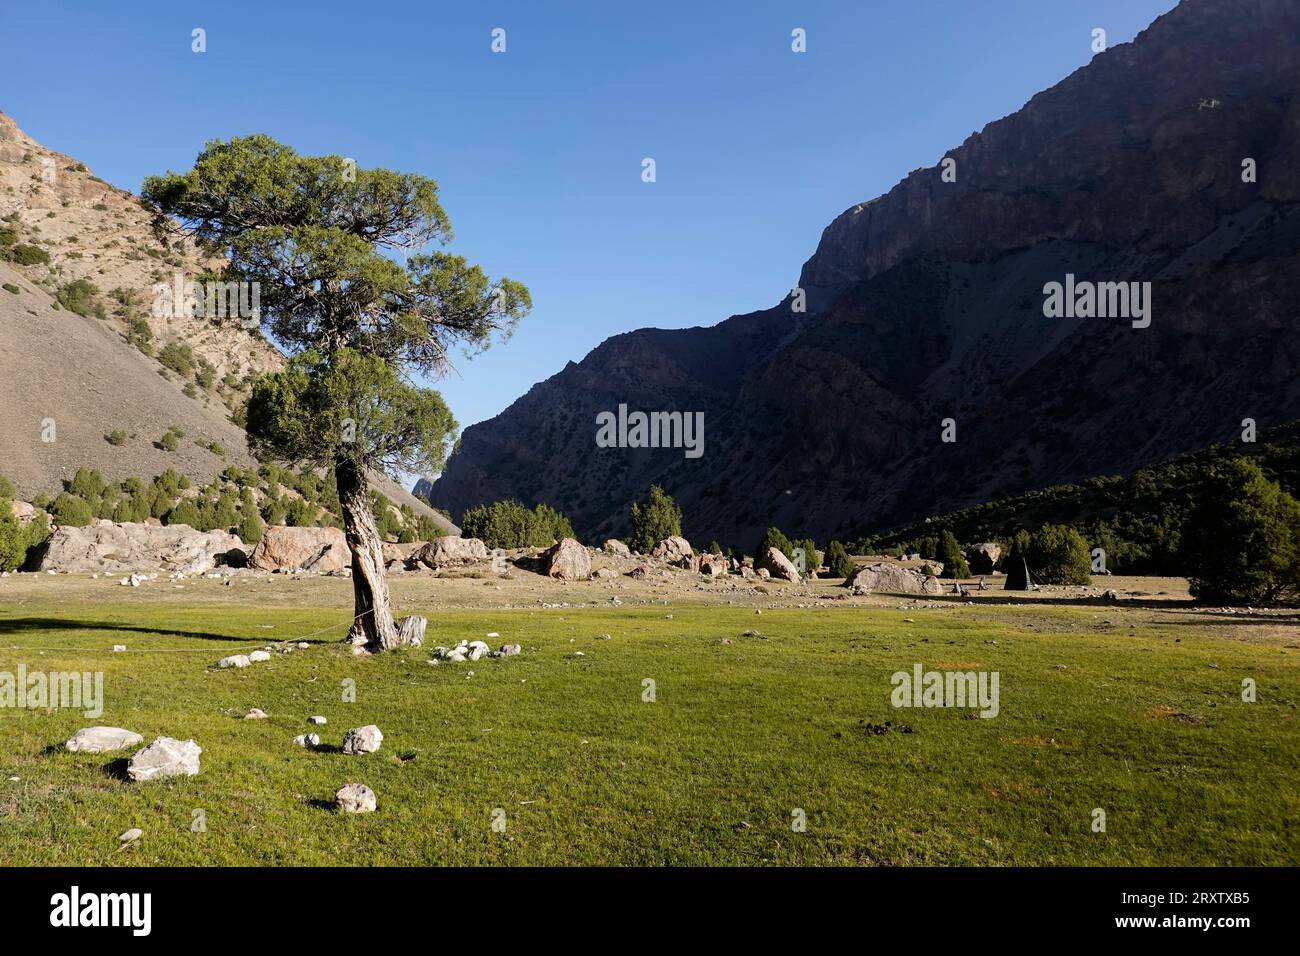 Las remotas y espectaculares montañas Fann, parte del oeste de Pamir-Alay, Tayikistán, Asia Central, Asia Foto de stock